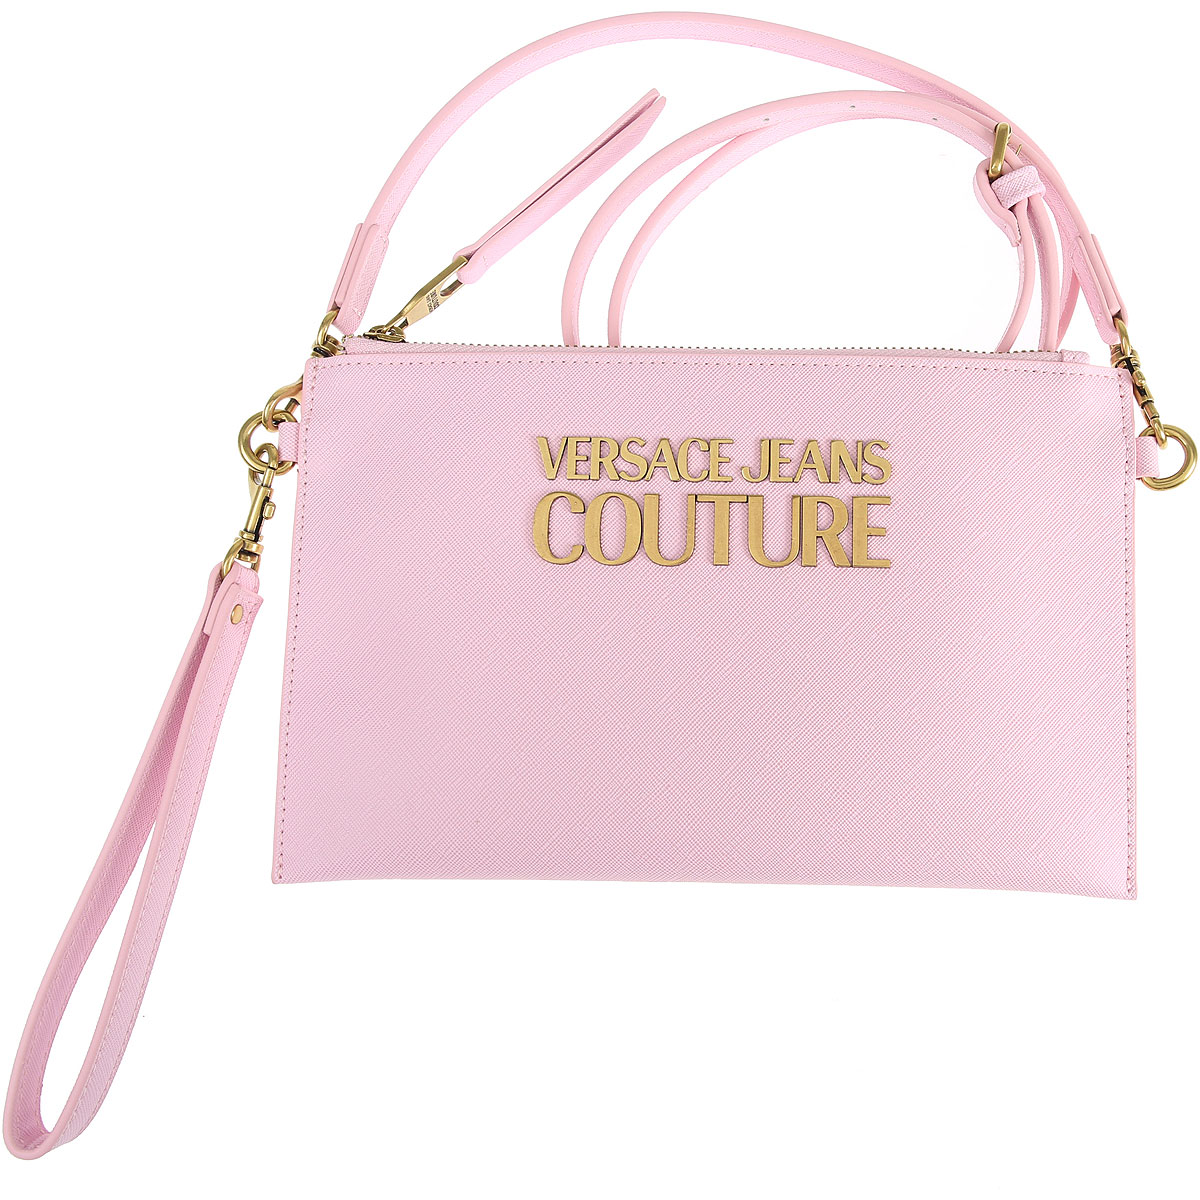 Handbags Versace Jeans Couture , Style code: e1vwablx-71879-426